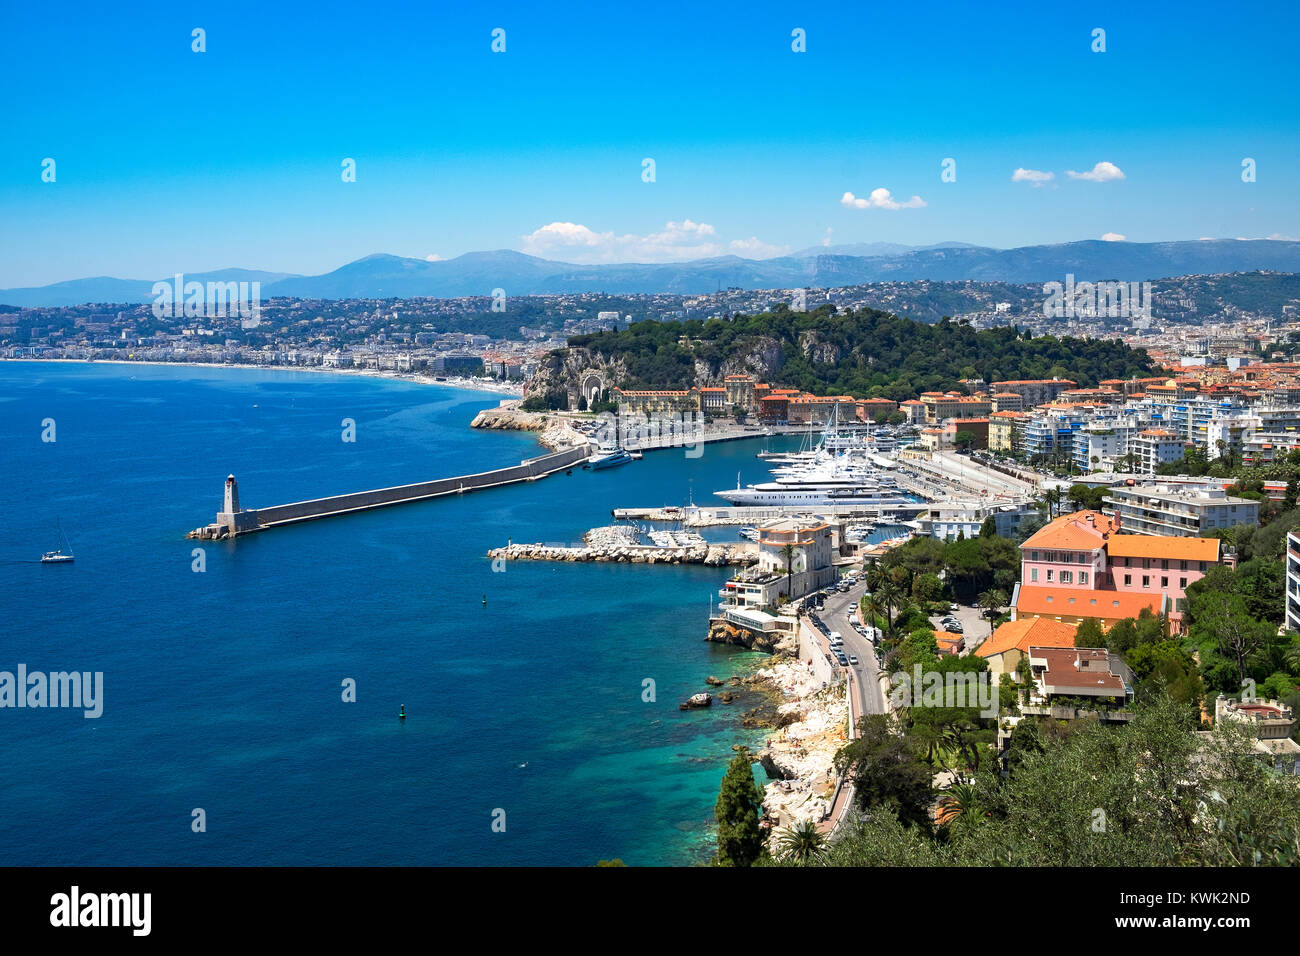 Hafen und Marina in der Stadt Nizza, Côte d'Azur, Frankreich. Stockfoto